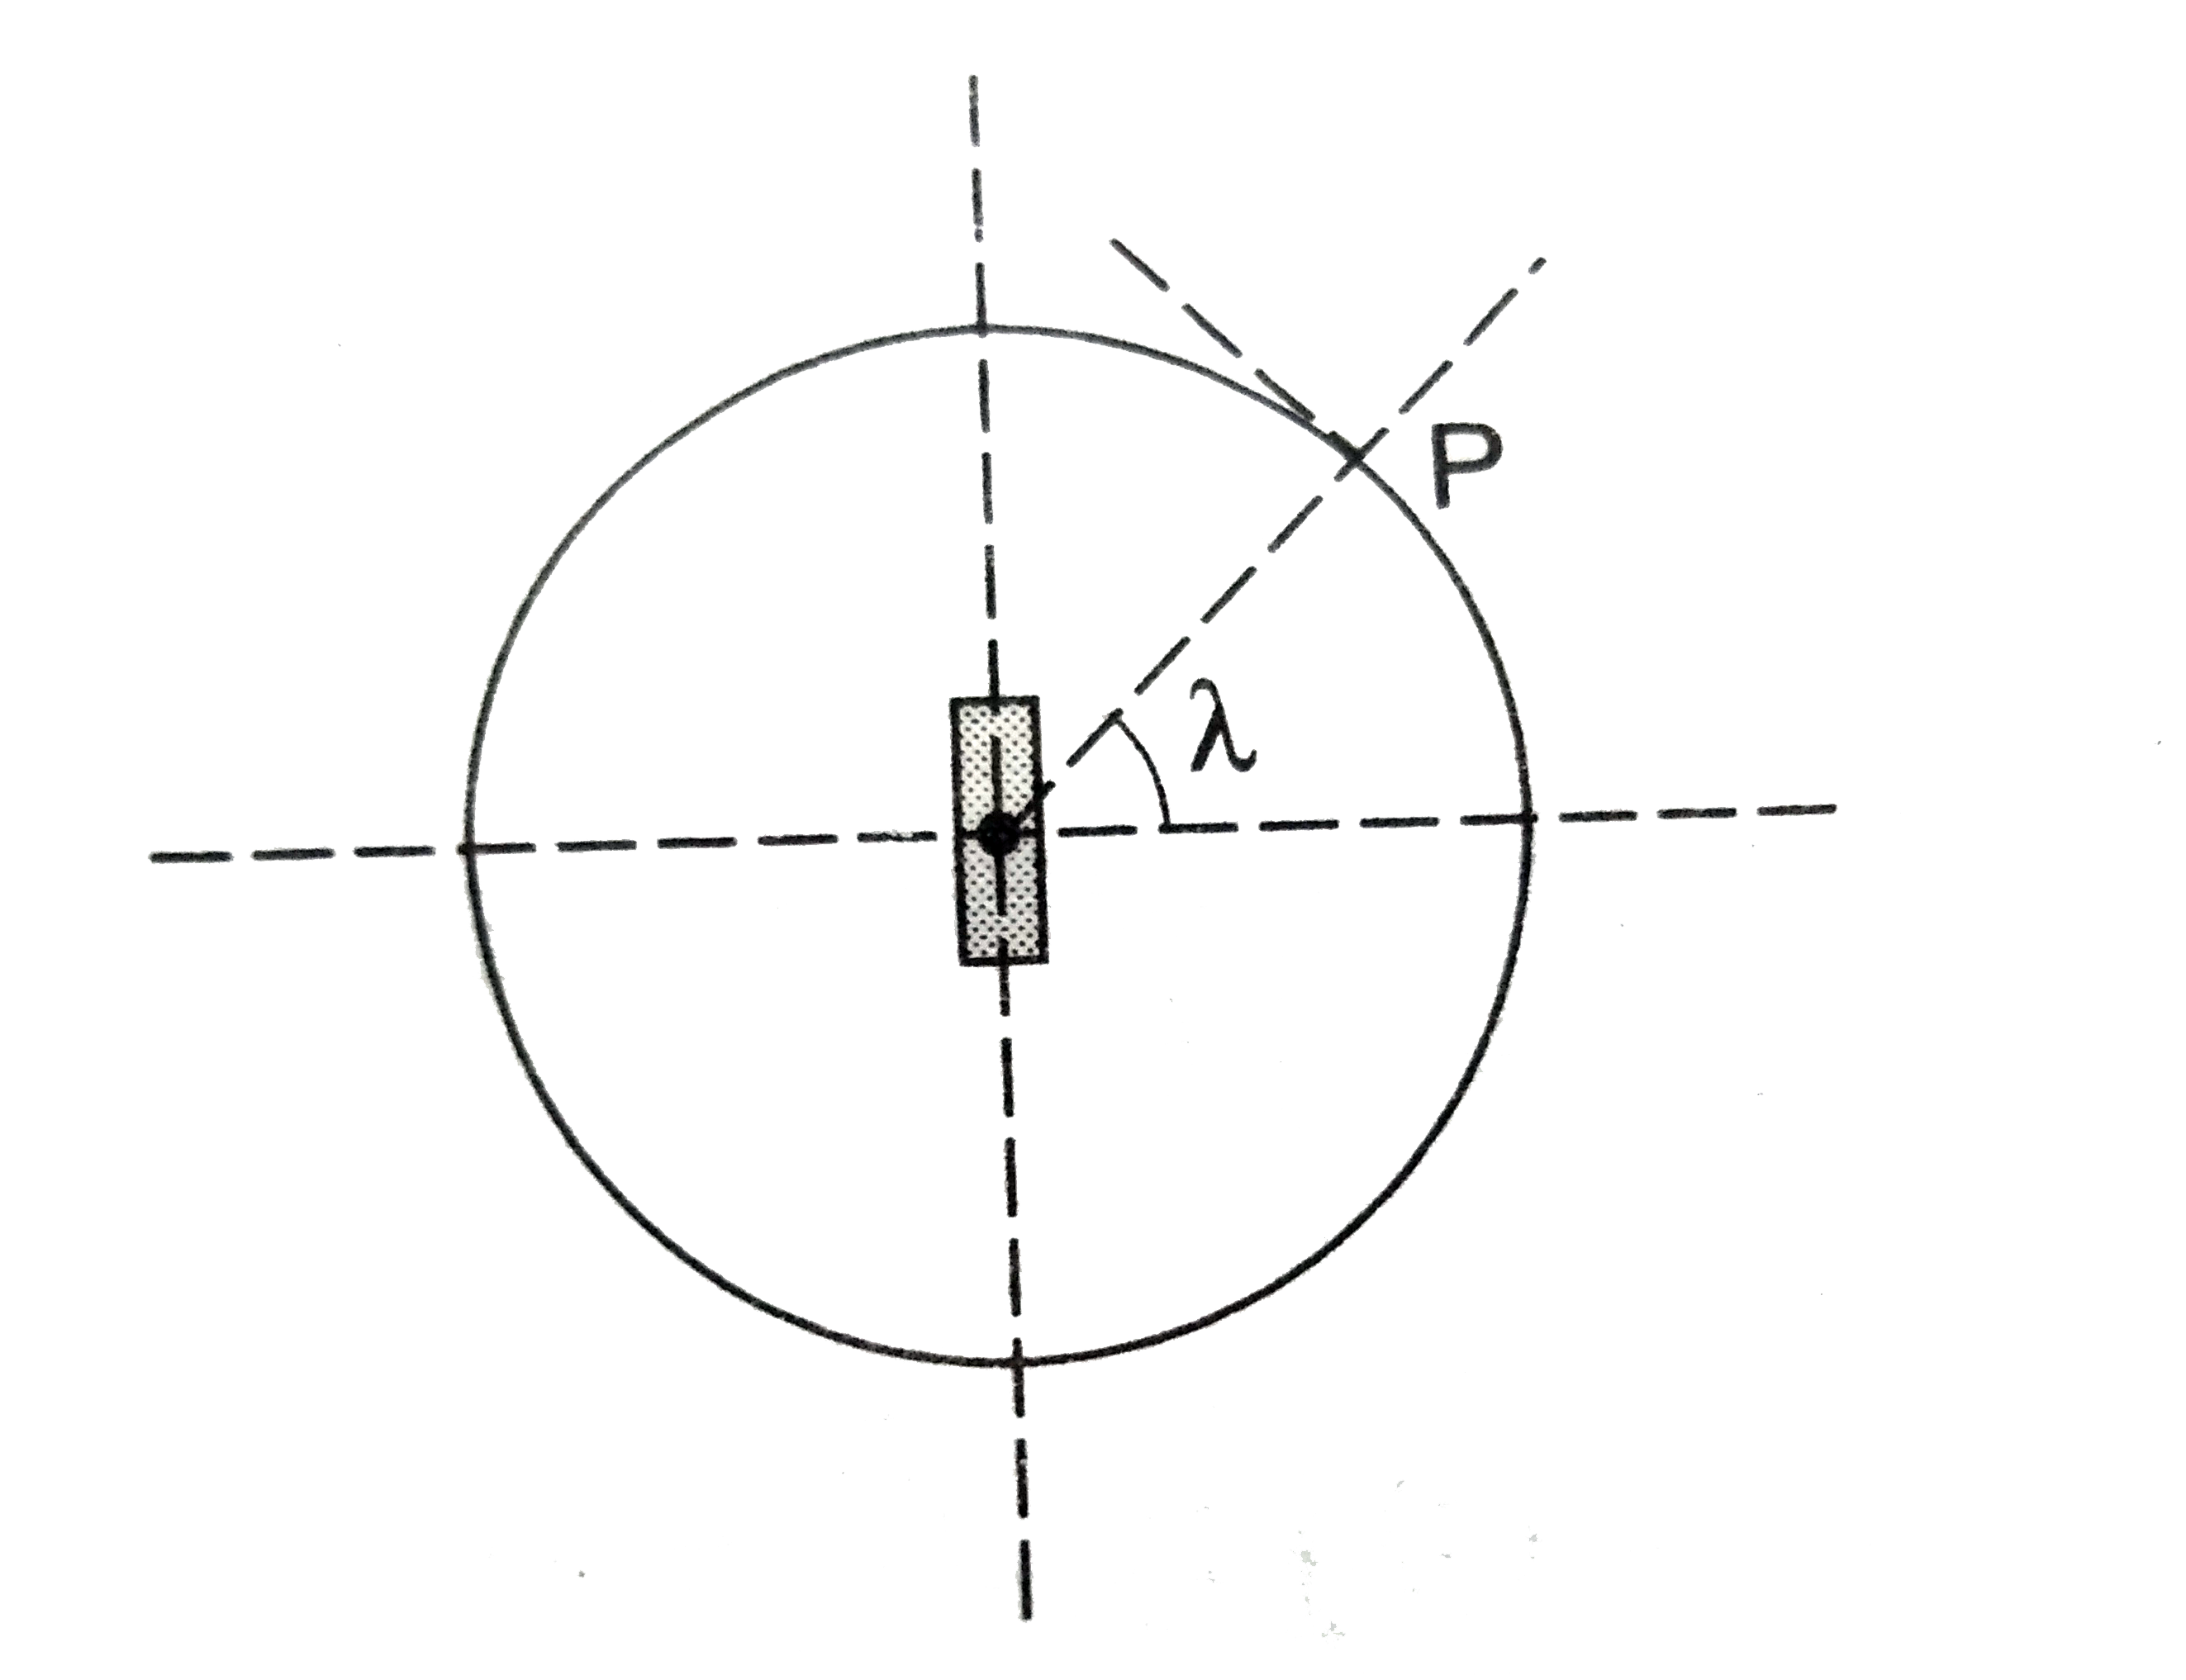 पार्थिव चुंबकत्व की व्याख्या के लिए एक काल्पनिक मॉडल प्रस्तुत किया जाता हैं जिसमें पृथ्वी के केंद्र पर स्थित m आघूर्ण का एक प्रबल चुंबक मान लेते हैं । अक्षांश (latitude) lamda के किसी स्थान  P पर नमन कोण का मान sigma प्रेक्षित होता हैं । पृथ्वी की त्रिज्या R मान लें ।      स्थान P पर पृथ्वी के चुंबकीय क्षेत्र के क्षैतिज घटक B(H) के लिए संबंध हैं